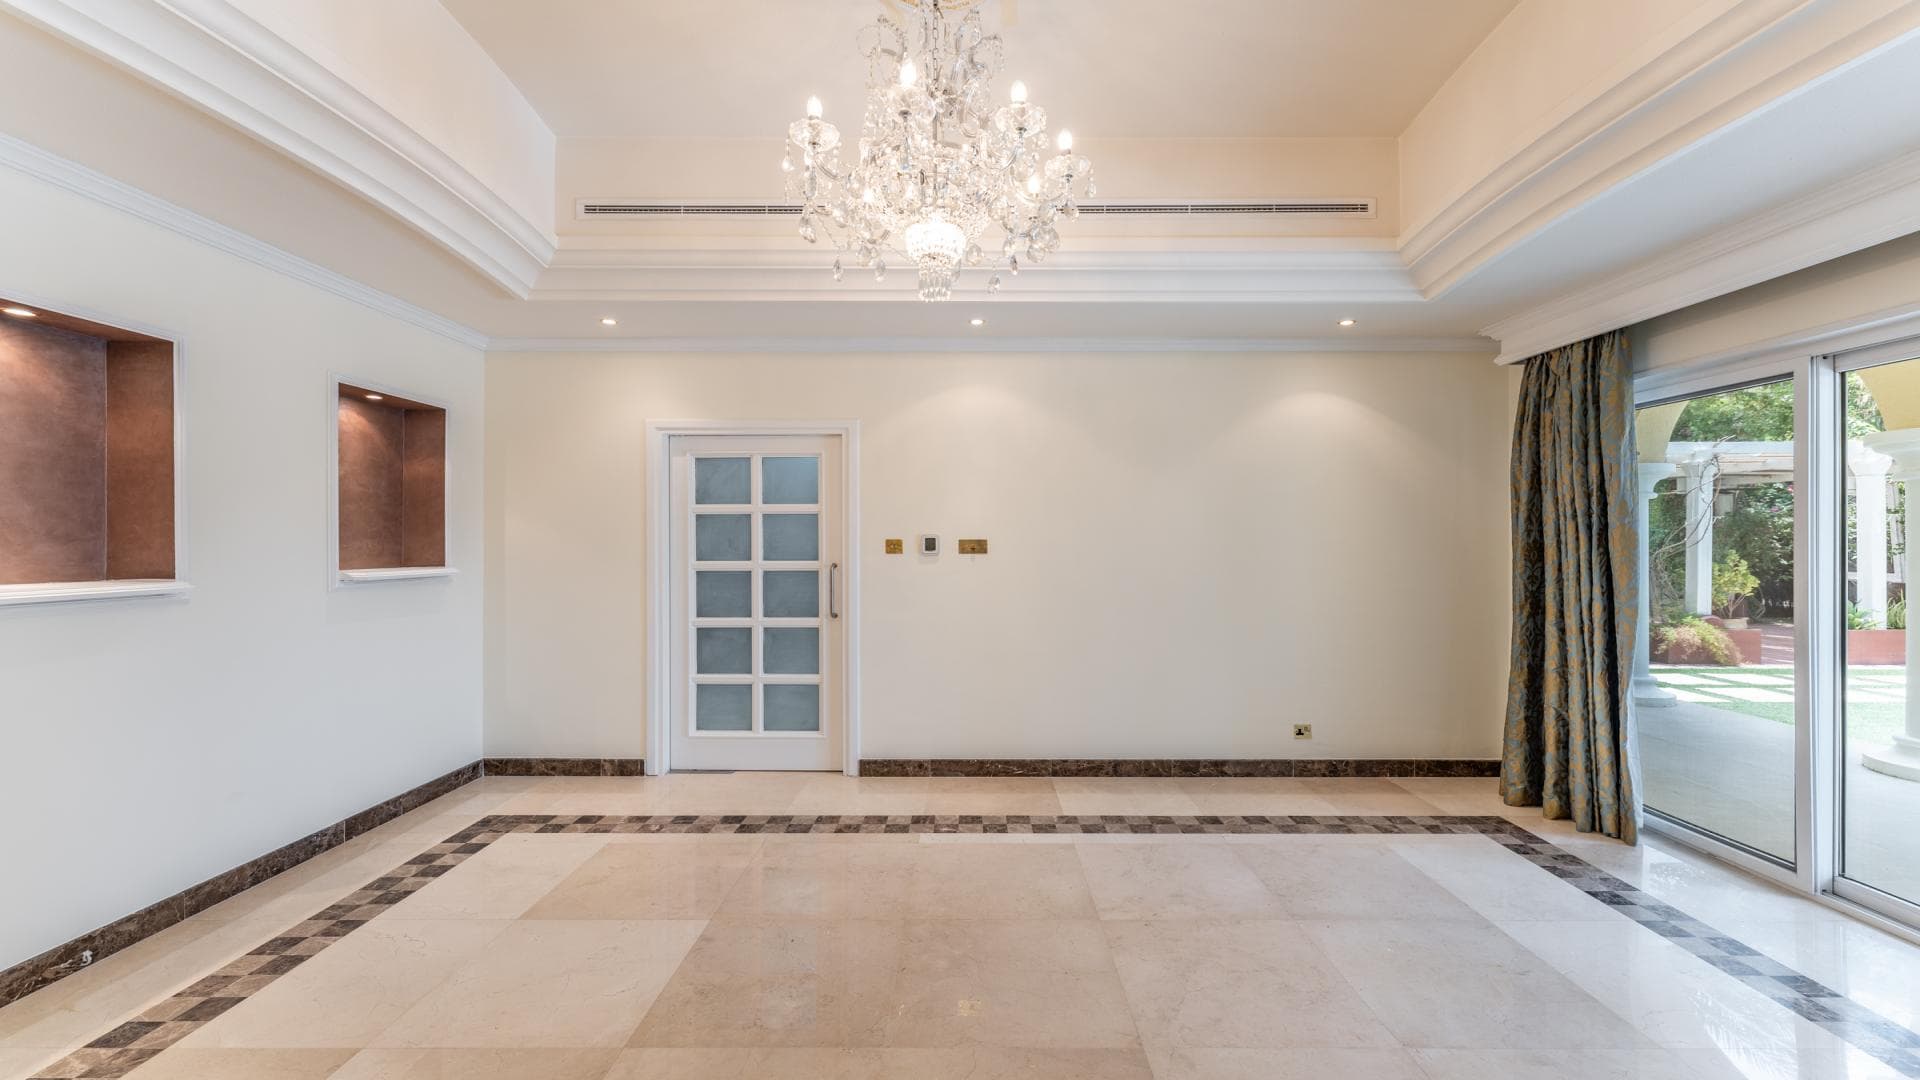 5 Bedroom Villa For Rent Al Thamam 36 Lp36037 F6f328a09fb4480.jpg